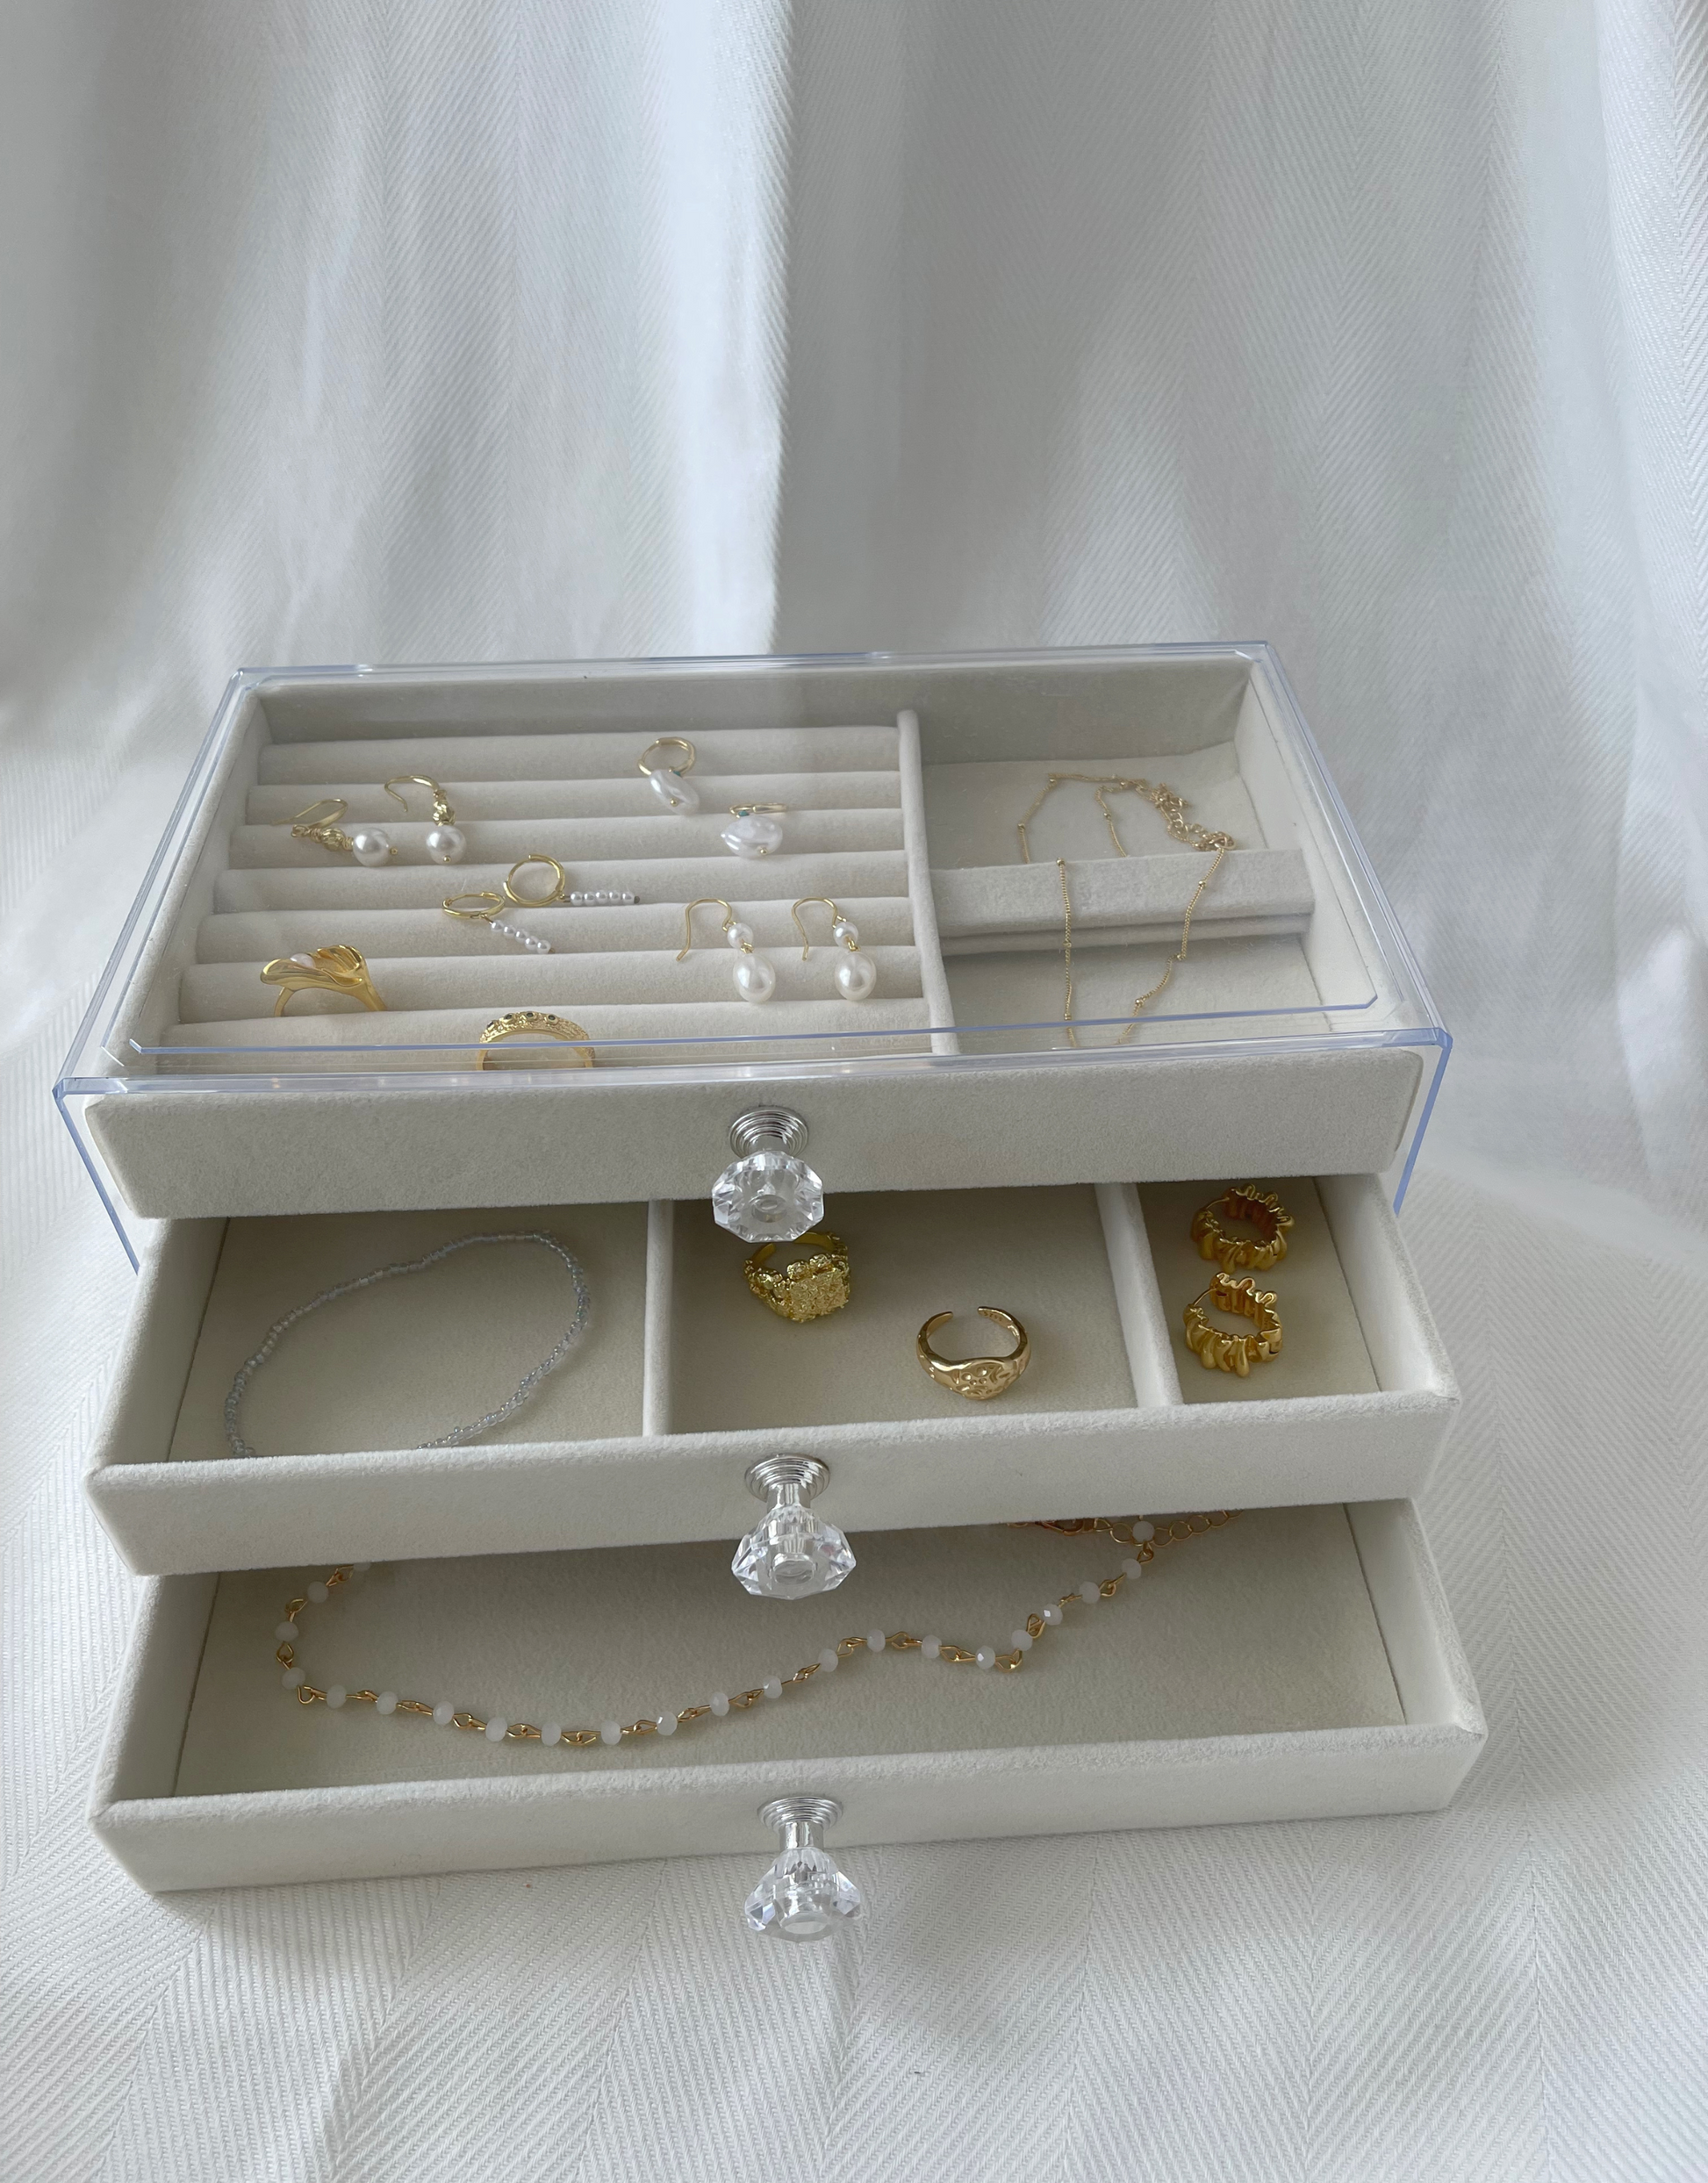 Smukt beige smykkeskrin i akryl med 3 skuffer.  Specifikationer: Materiale: Akryl Mål: 18 x 15 x 27 cm Farve: Beige